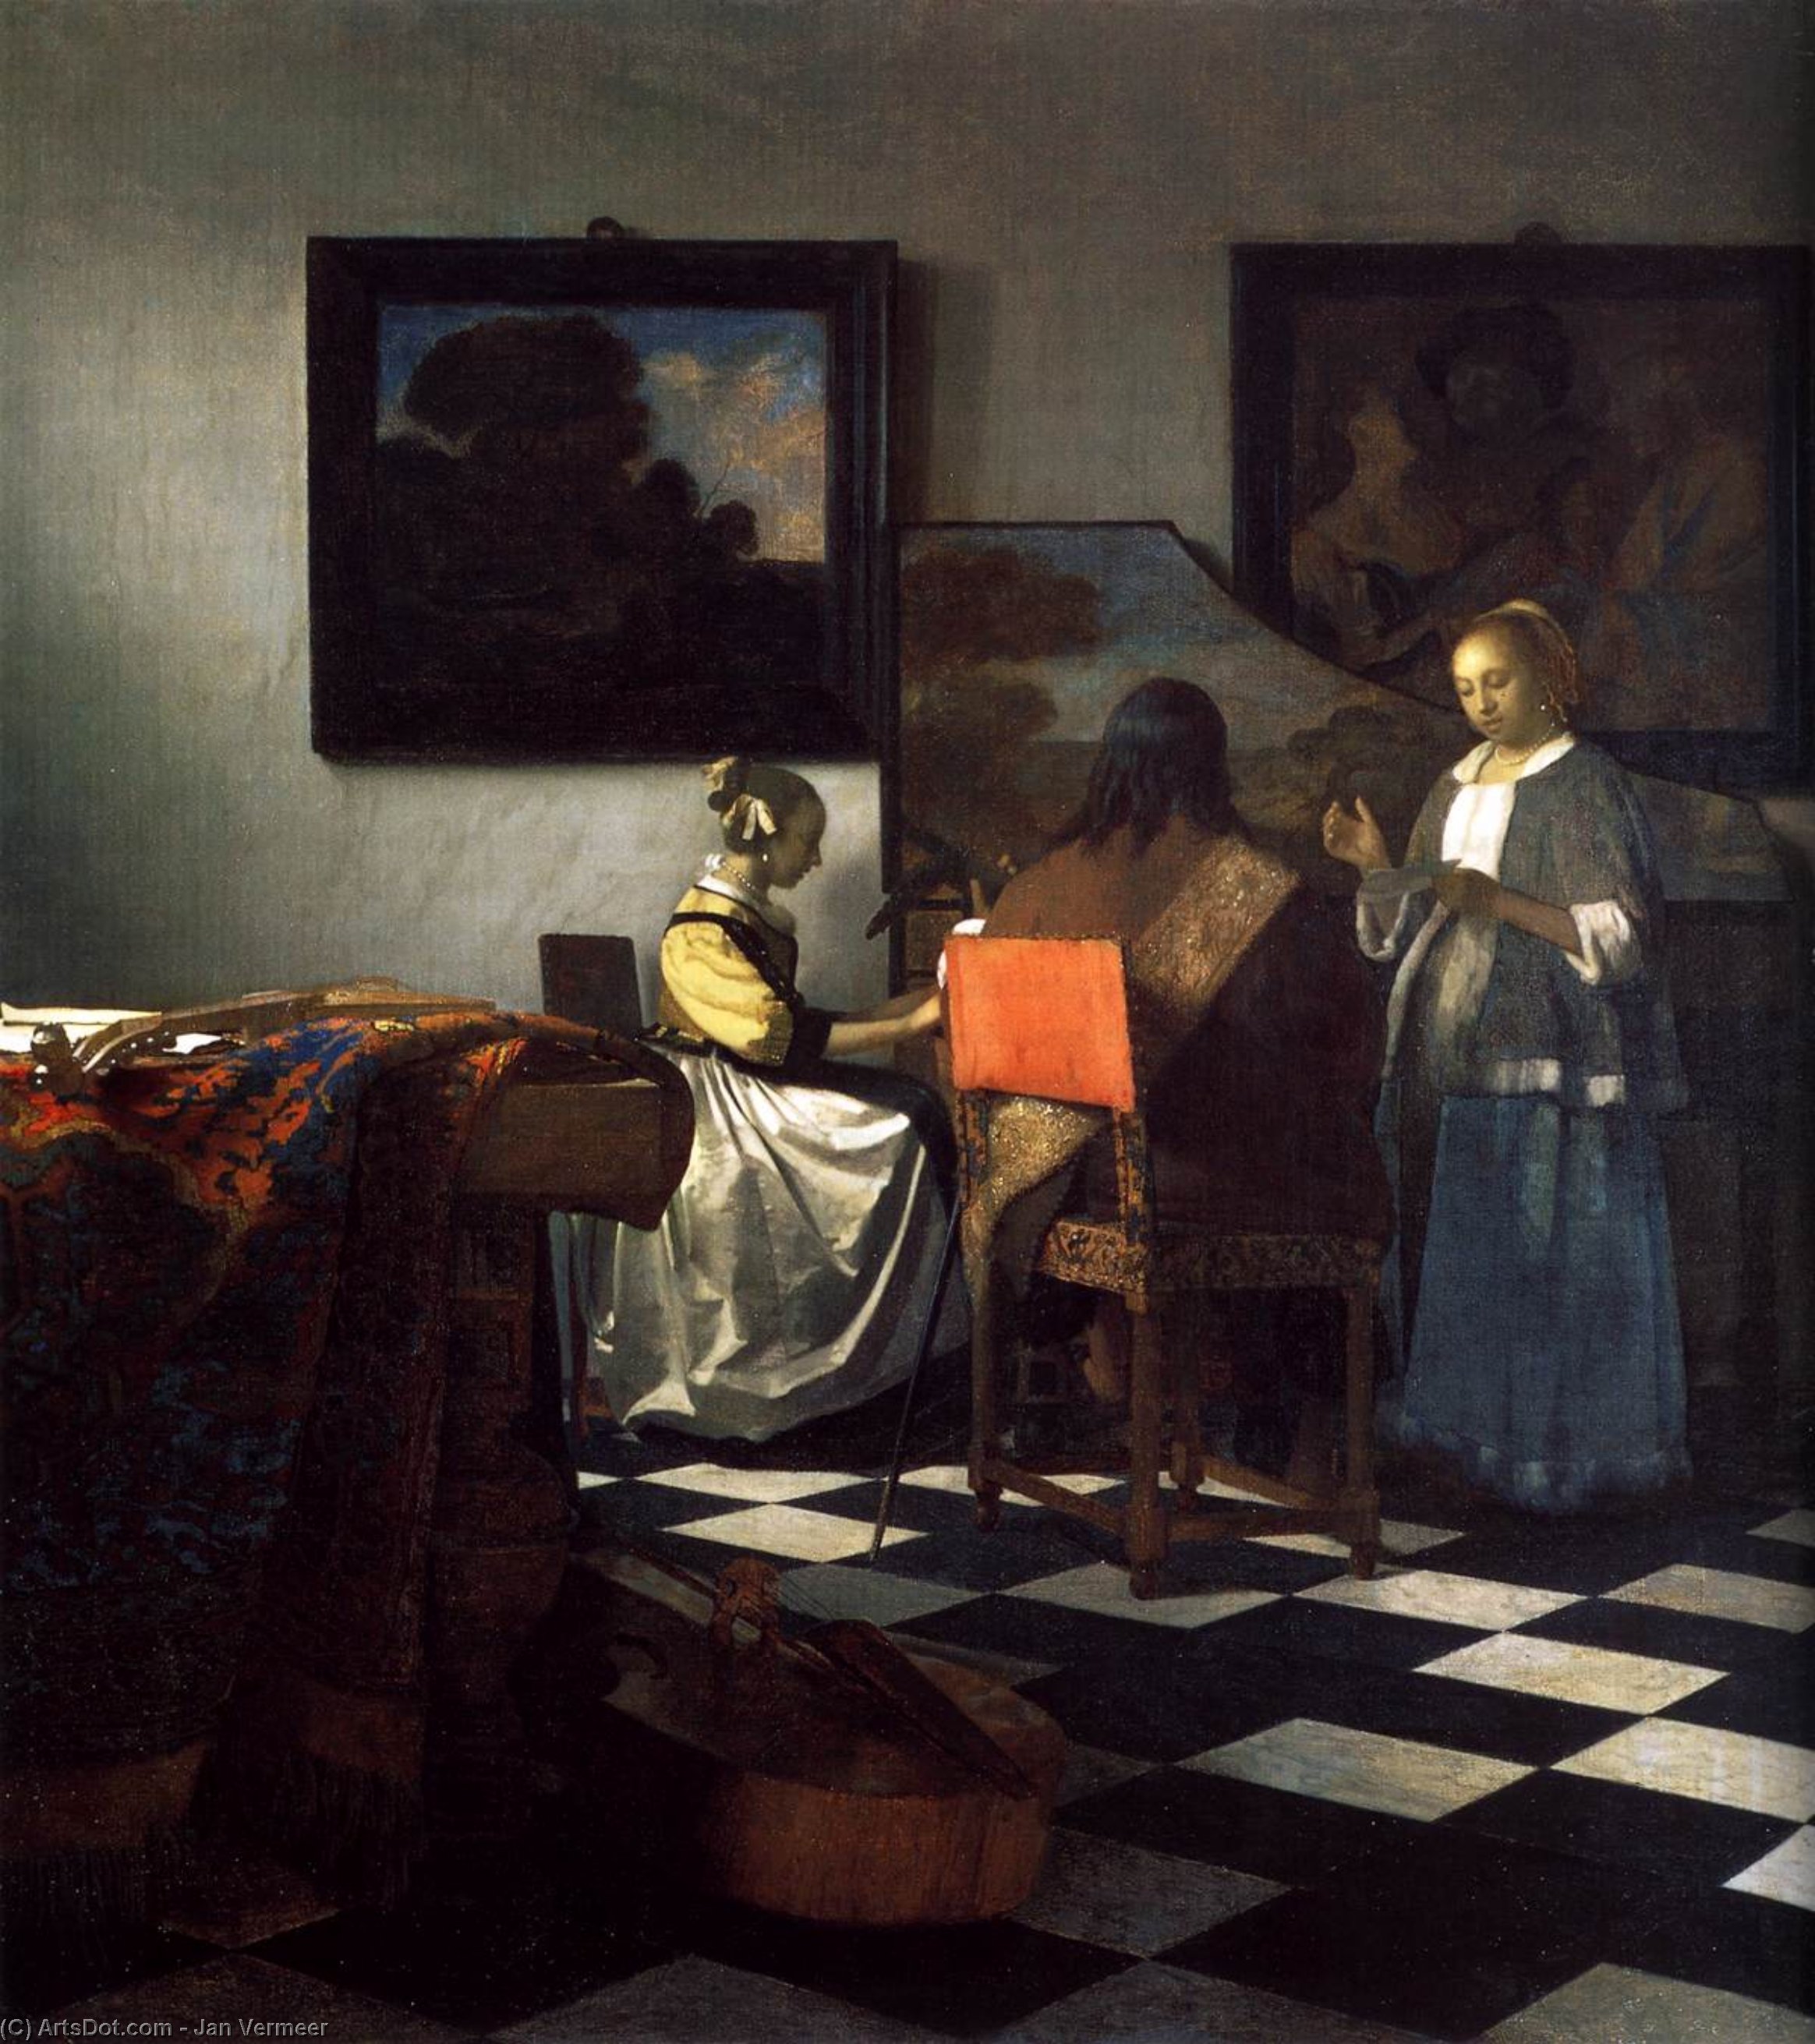 WikiOO.org - Encyclopedia of Fine Arts - Lukisan, Artwork Jan Vermeer - The Concert